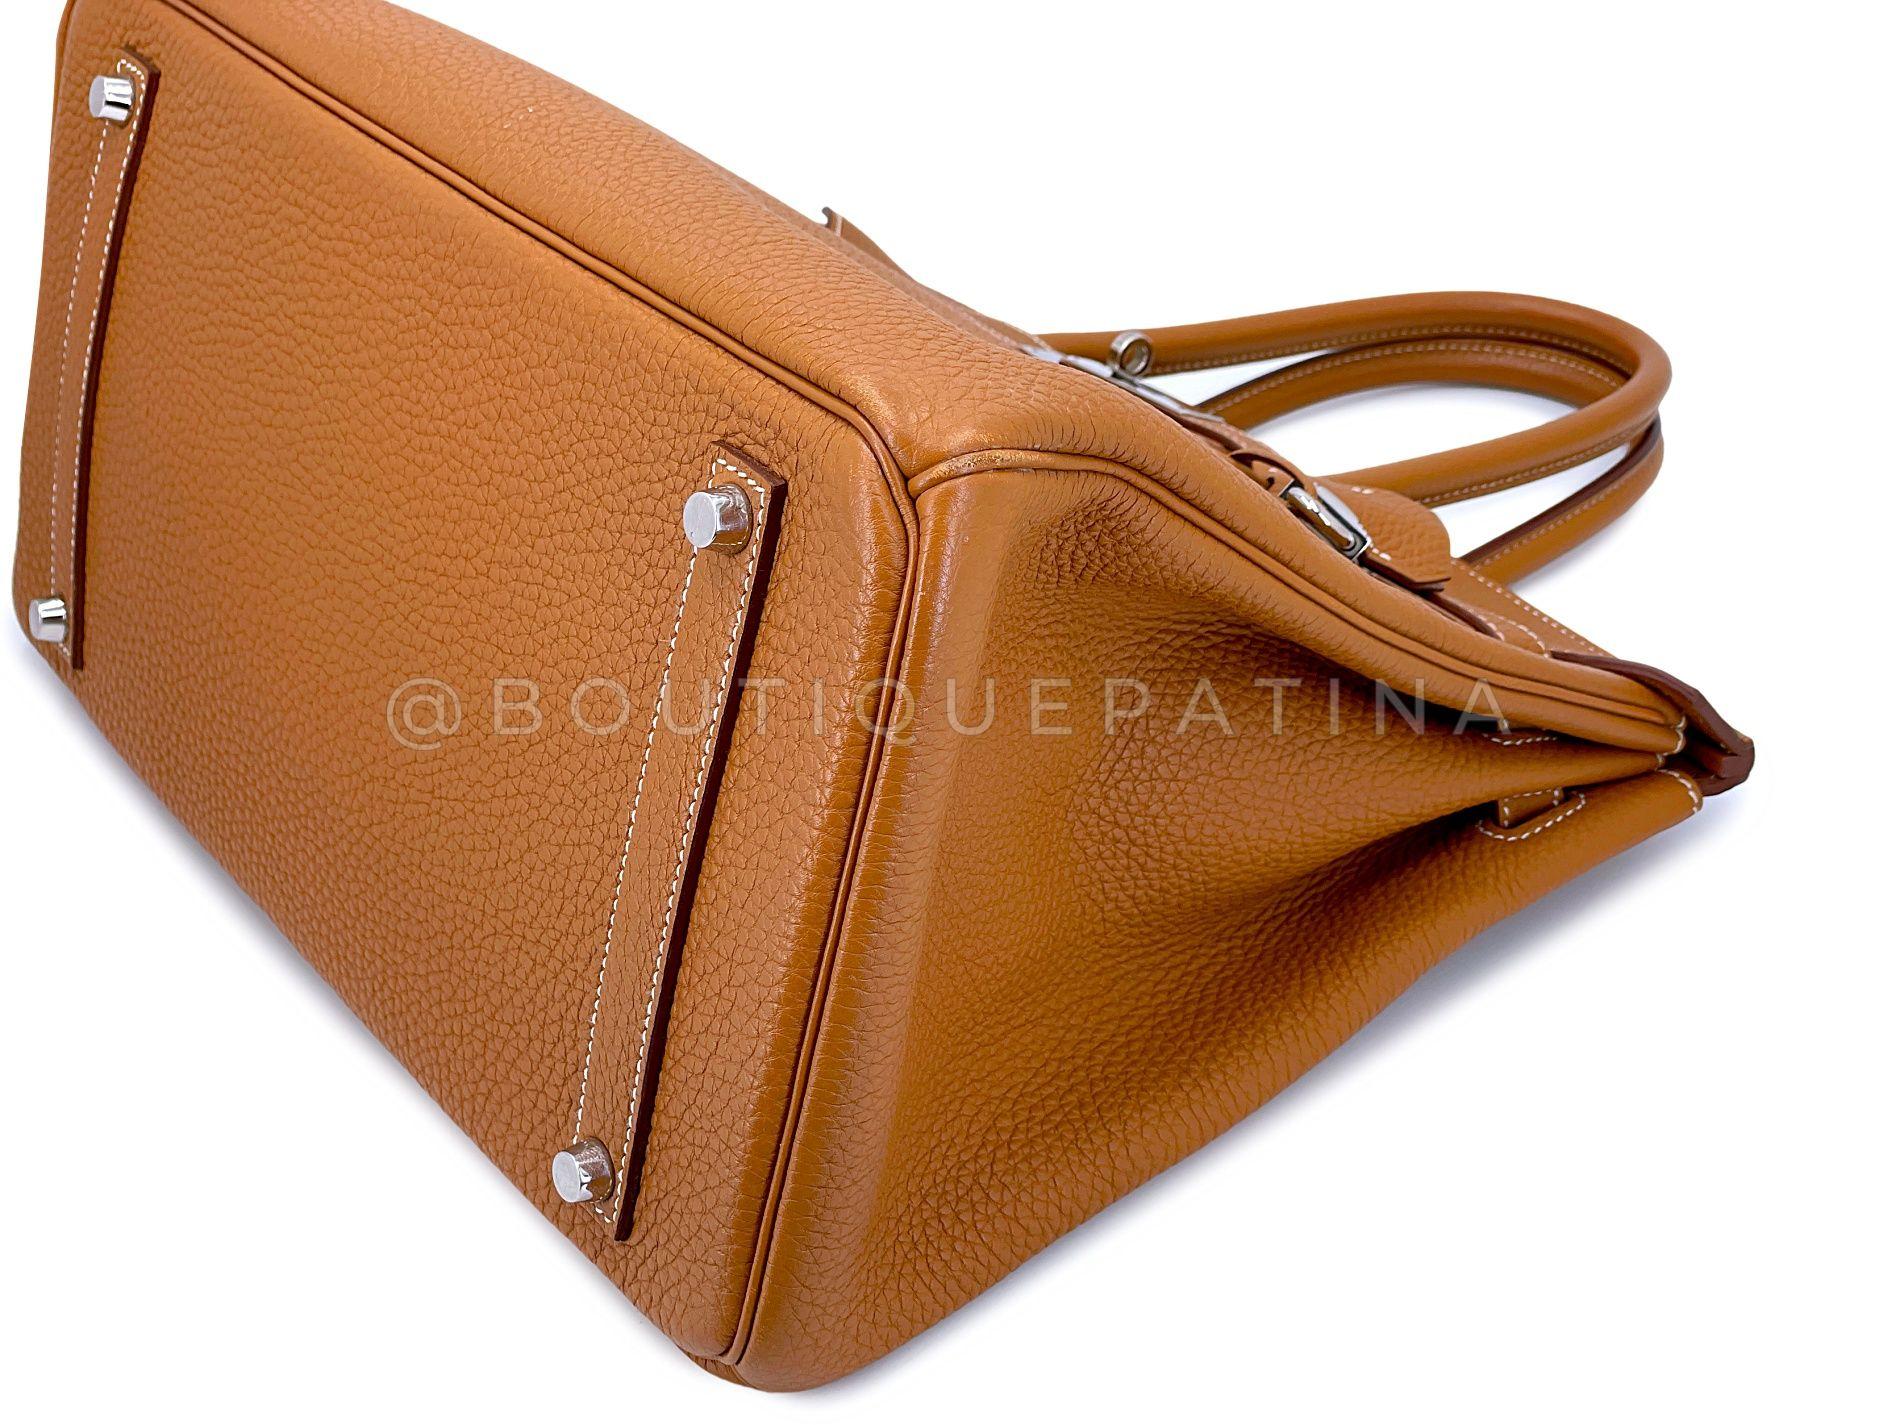 Hermès Gold Togo Birkin Tote Bag 35cm PHW Camel Brown 68060 For Sale 3